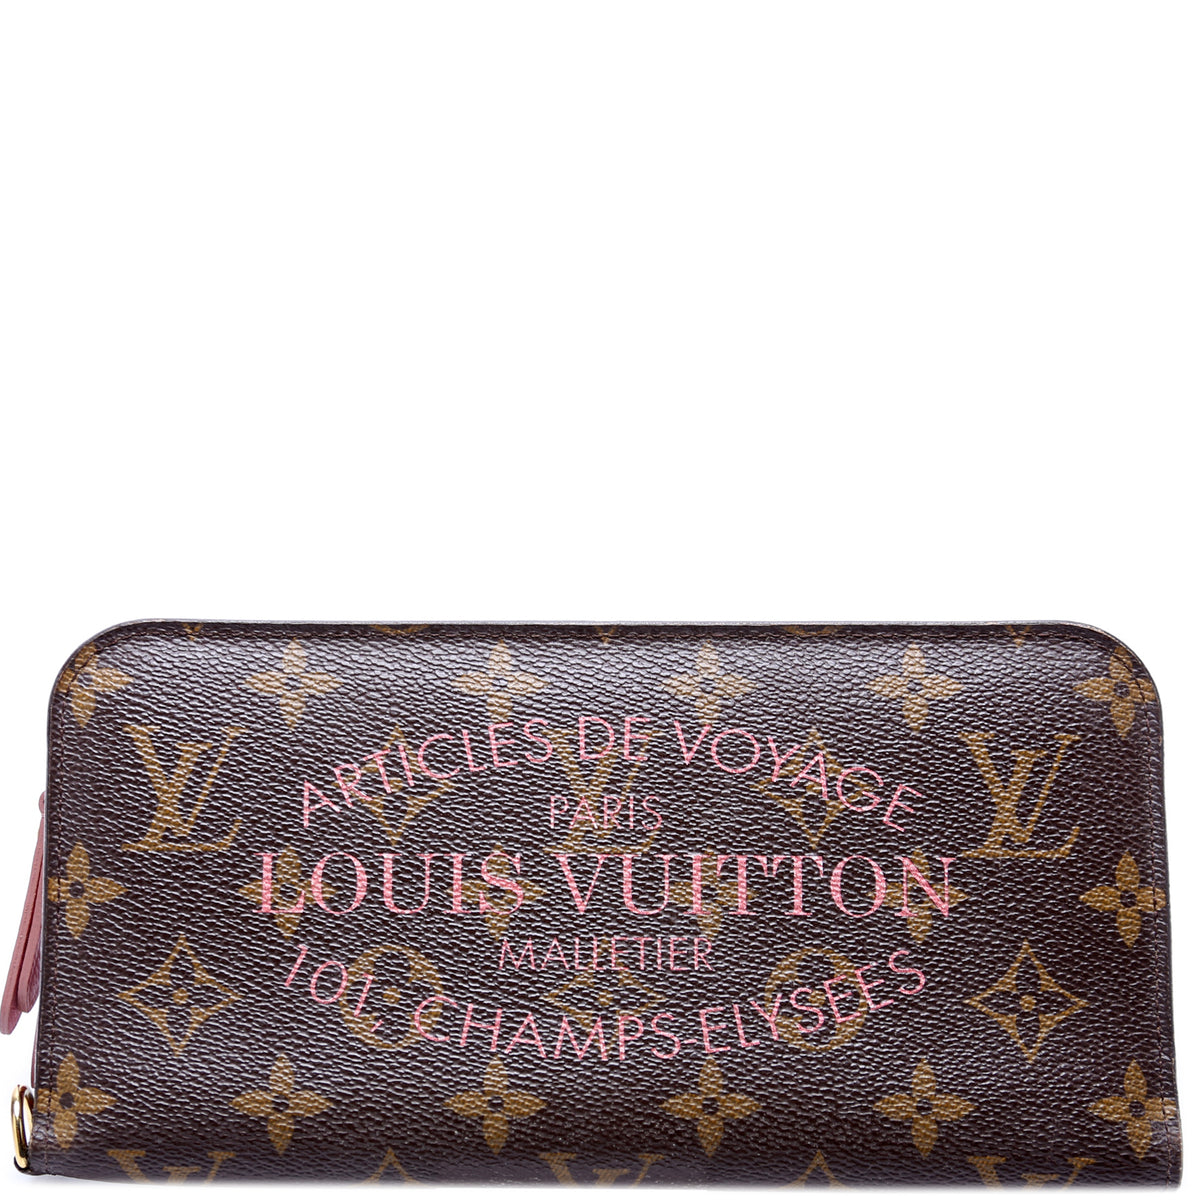 Authentic Louis Vuitton Inventeur Trunk Insolite Wallet Limited